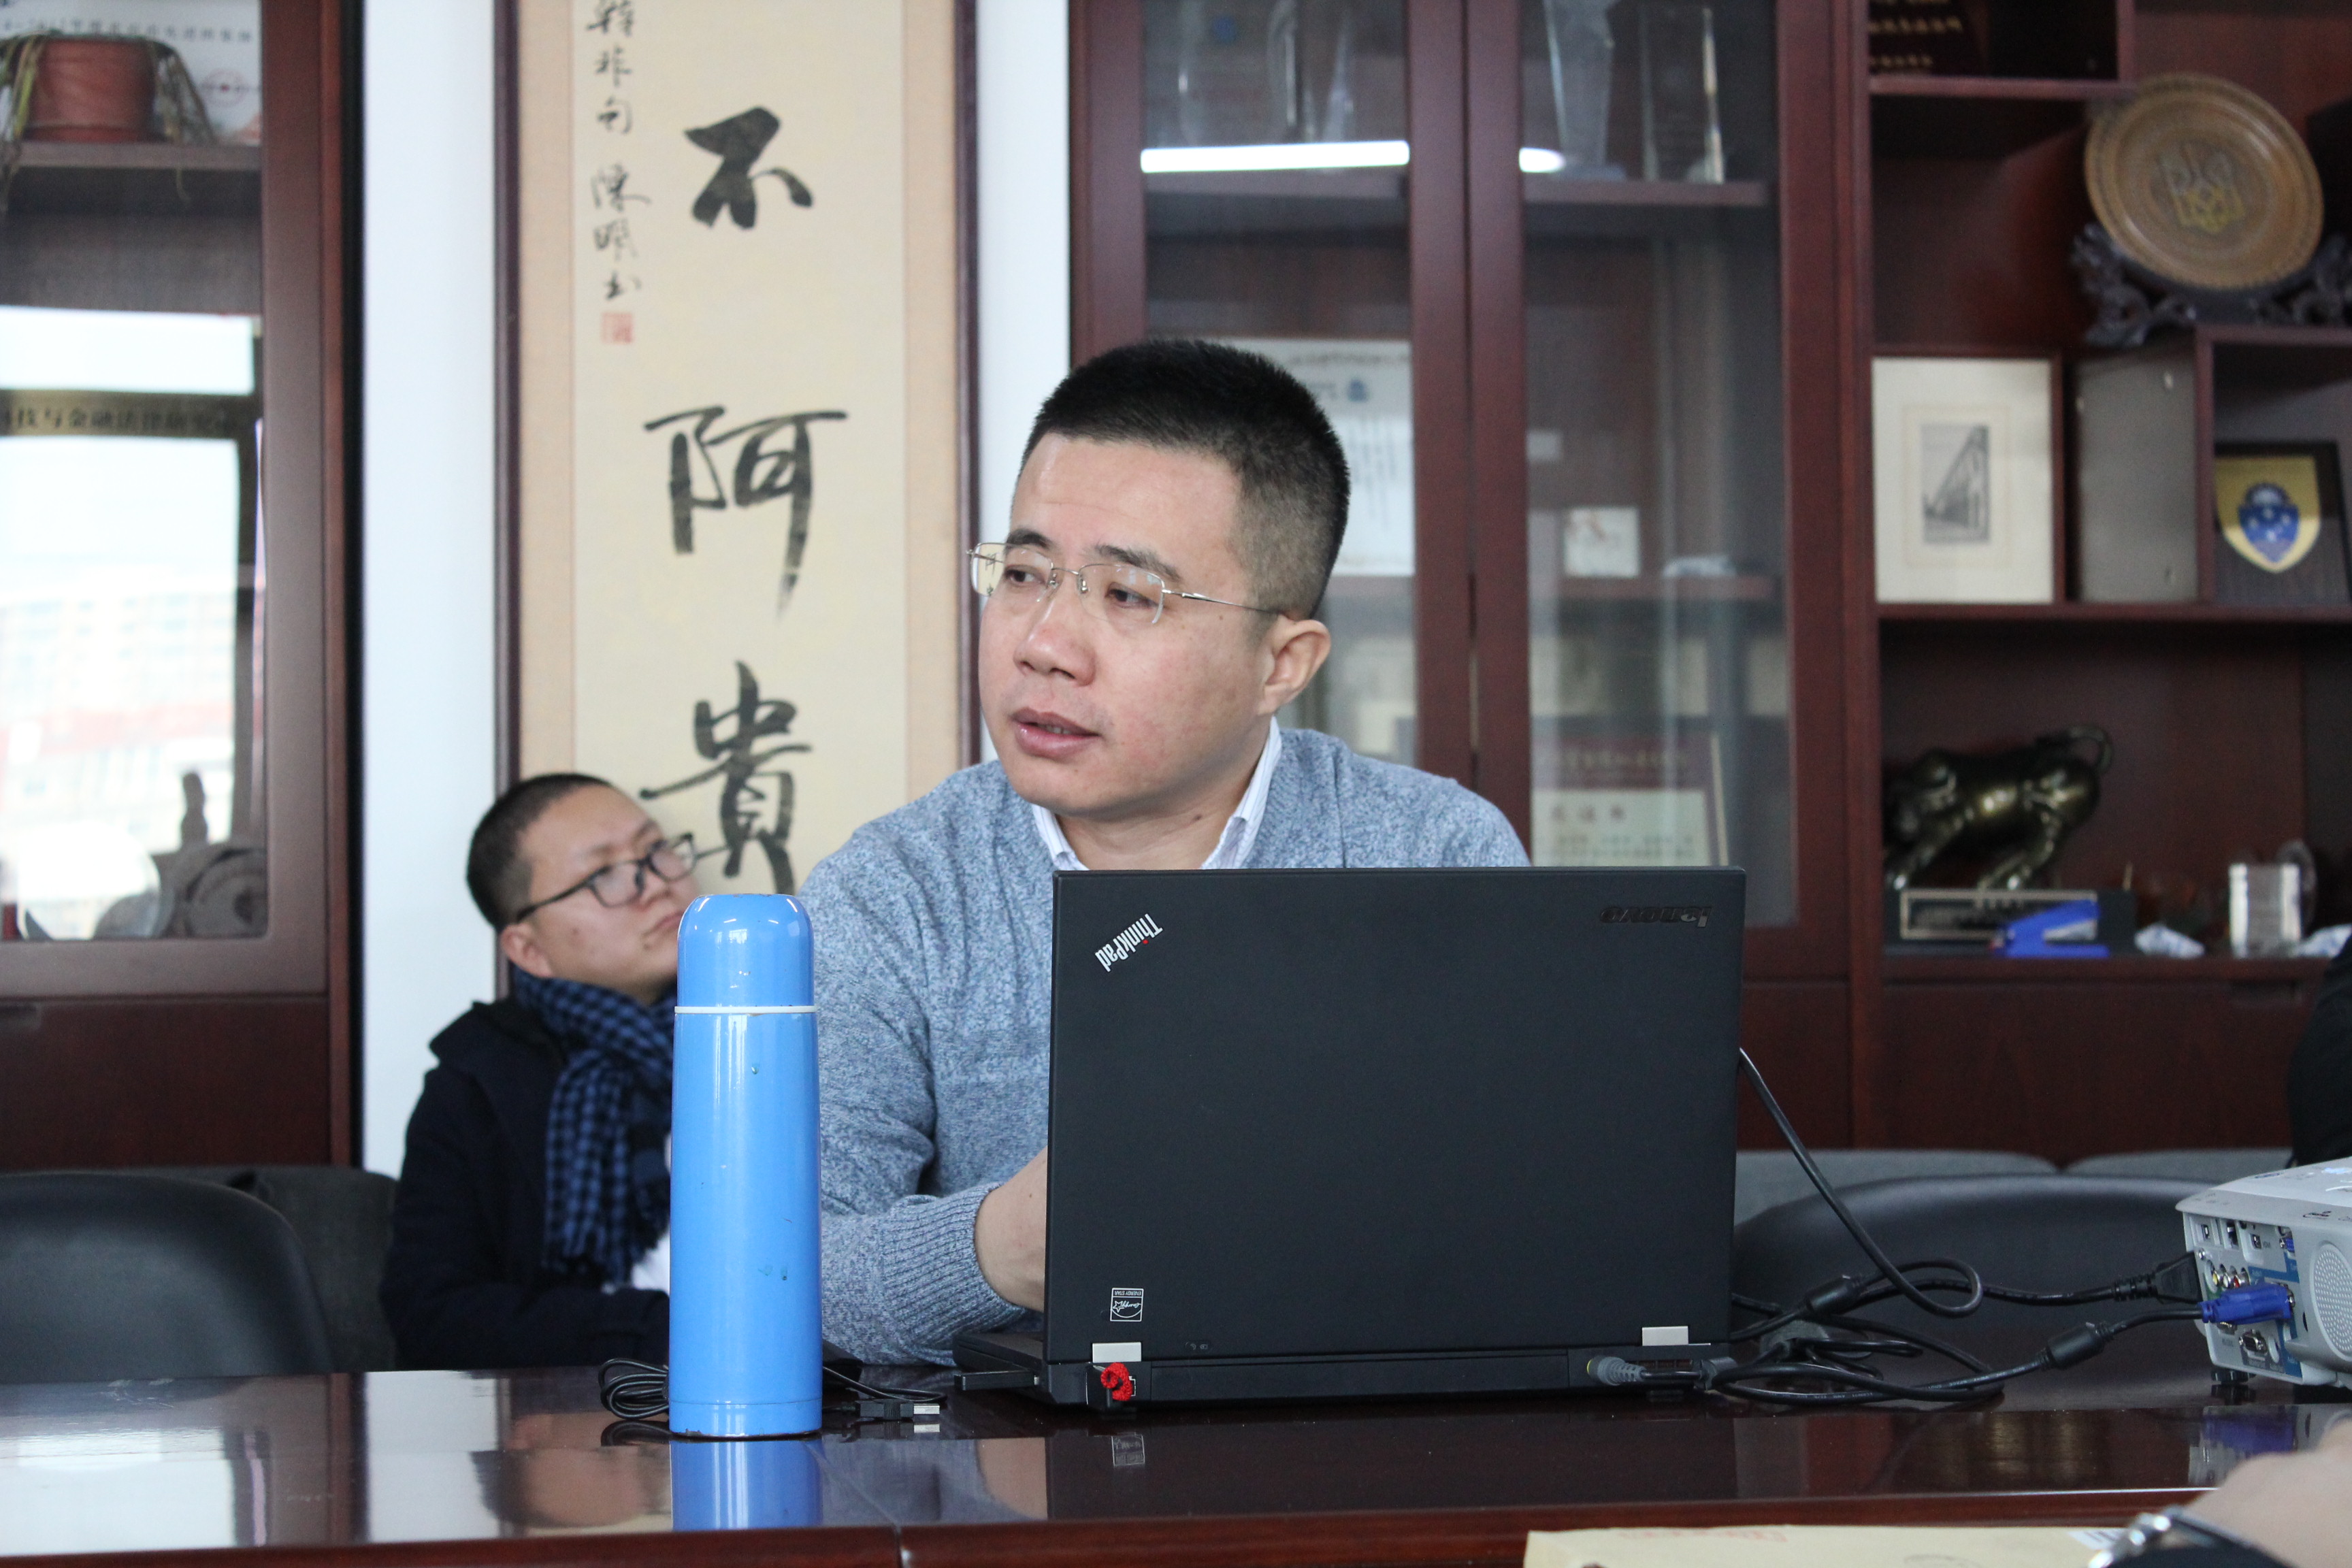 会议伊始,李伟副教授简要介绍了张小平副教授在能源法领域的贡献,随后